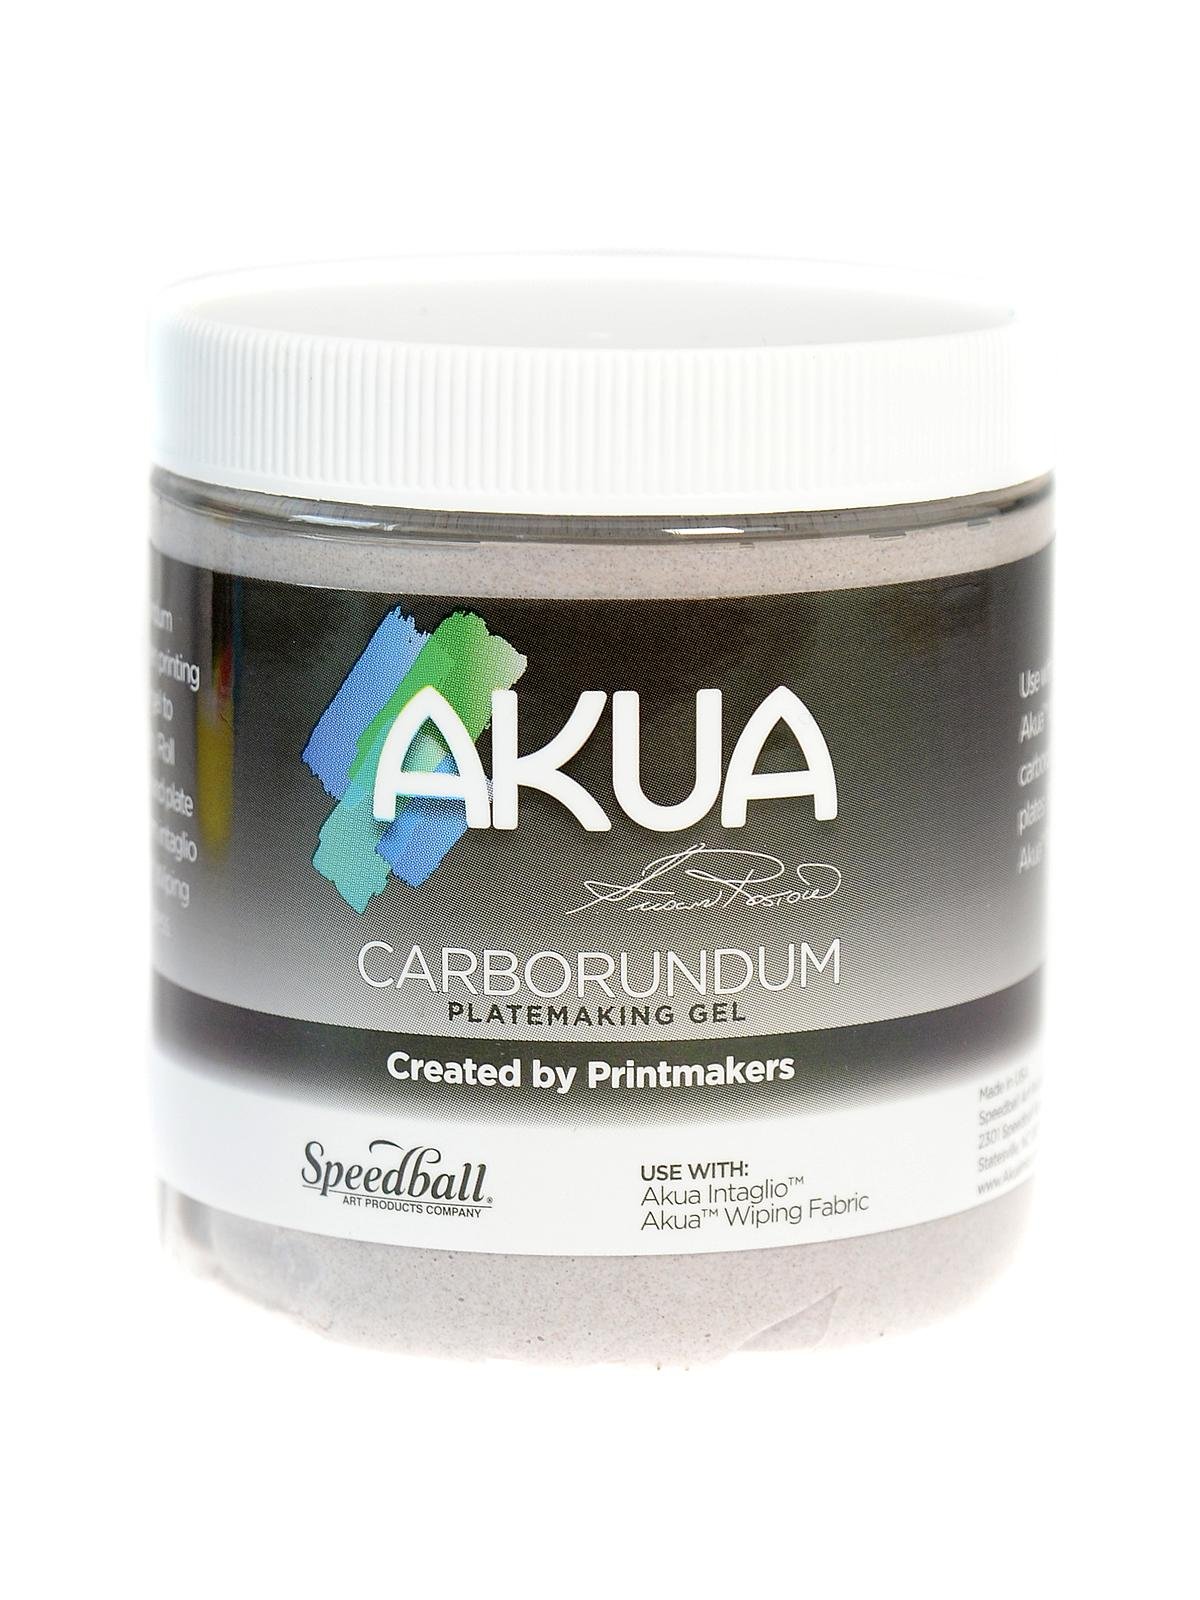 Akua - Carborundum Gel for Platemaking